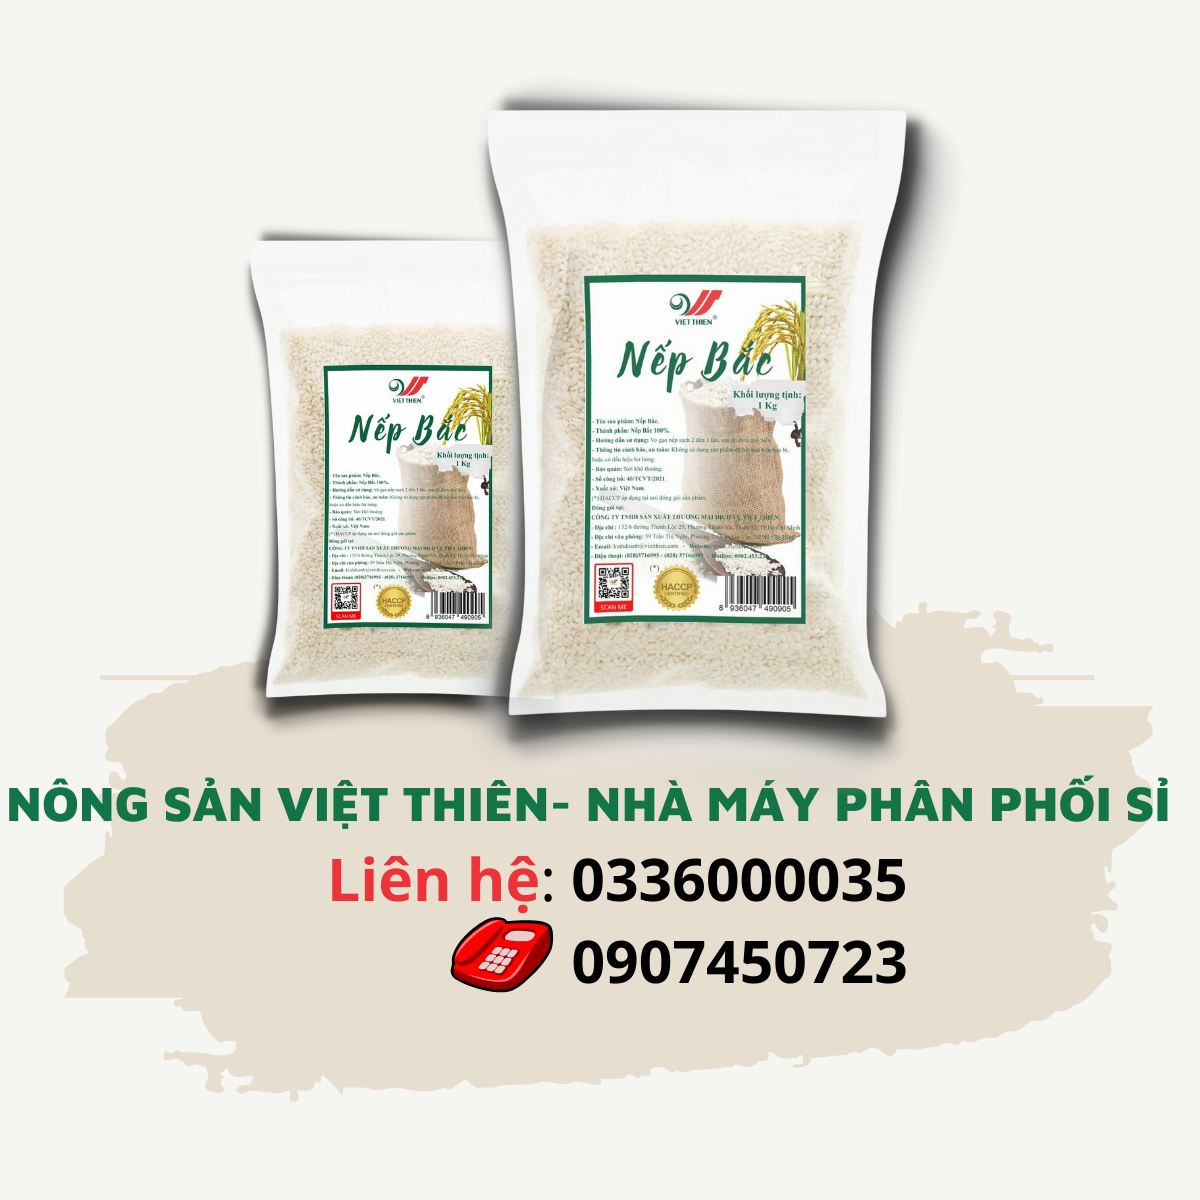 Nếp Bắc Việt Thiên 1kg, nhà máy sản xuất và phân phối nông sản Việt Thiên, giá rẻ